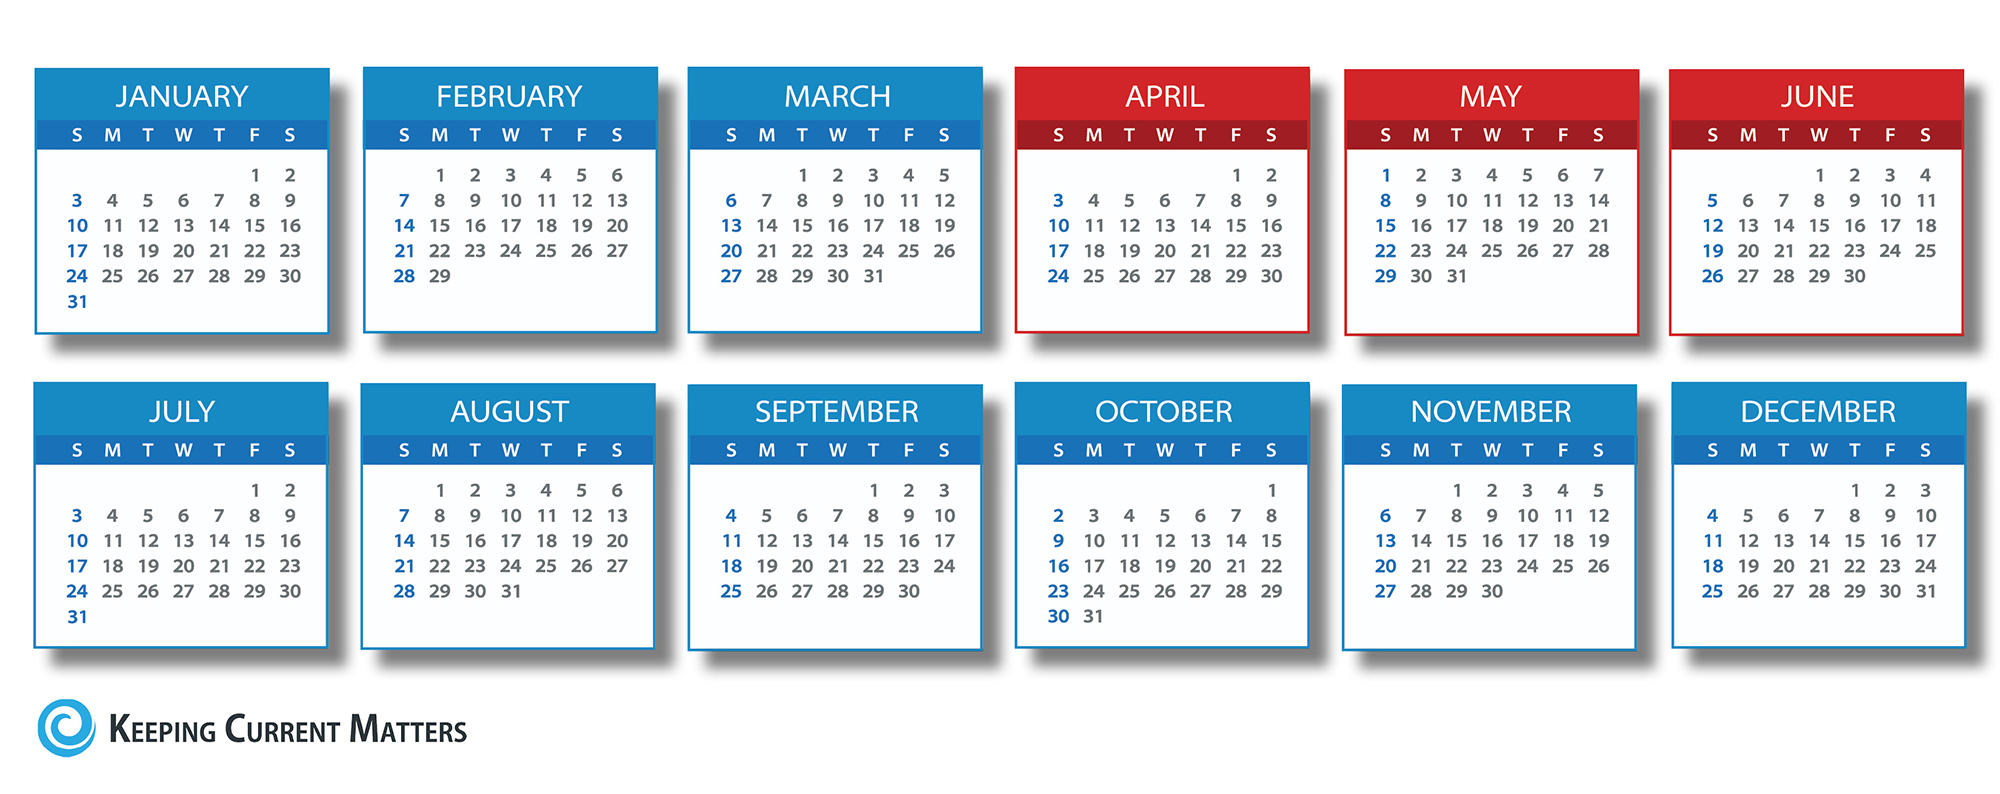 Calendar-2016-Listing-Dates-KCM.jpg